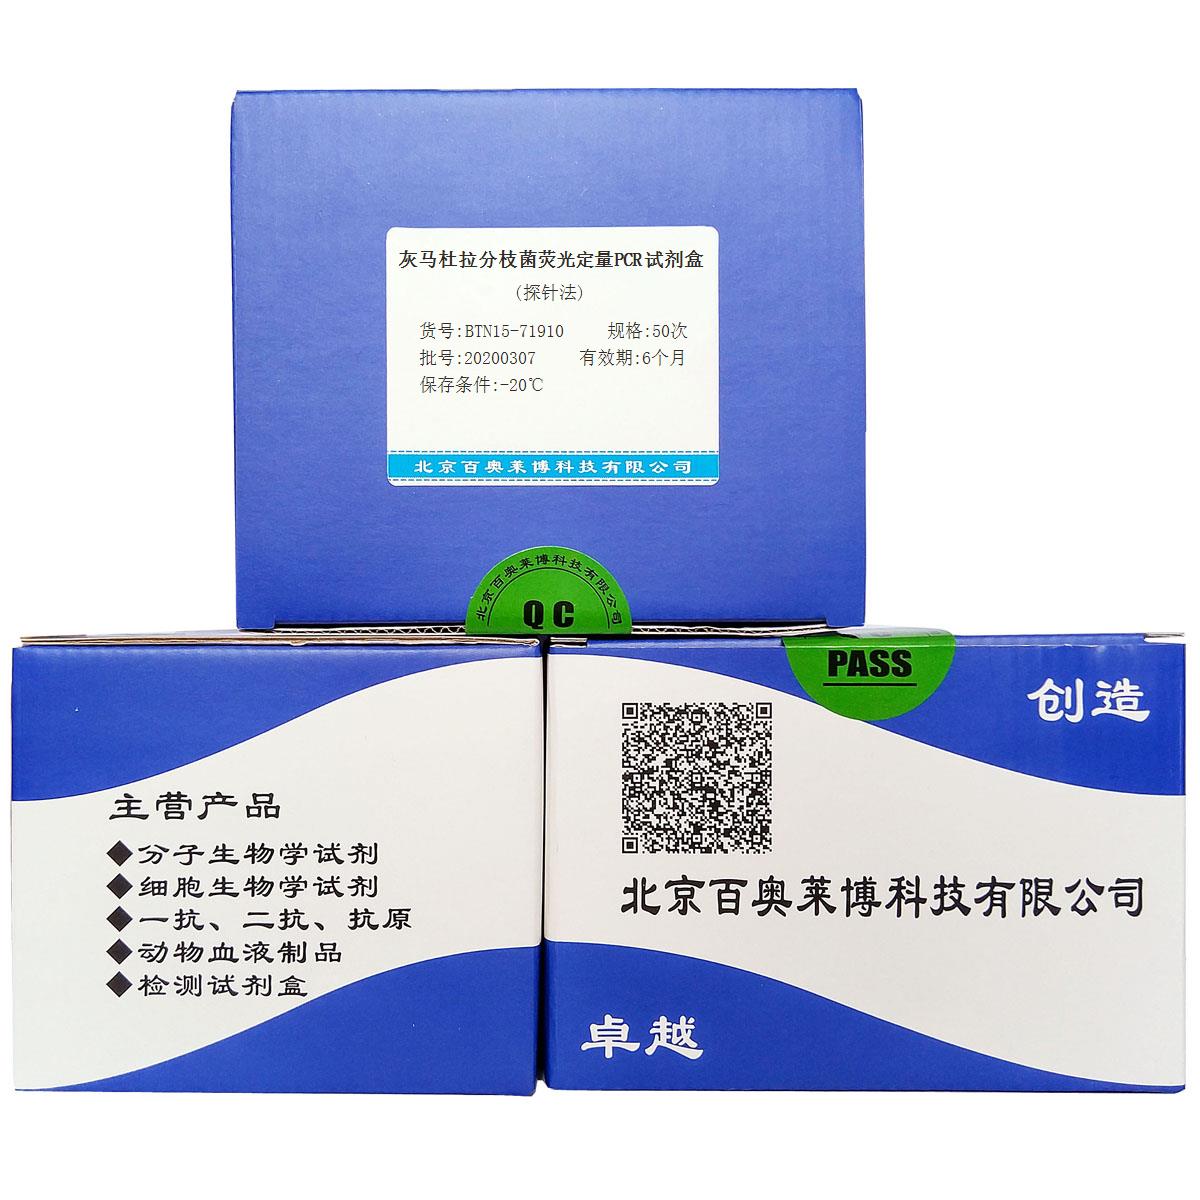 灰马杜拉分枝菌荧光定量PCR试剂盒(探针法)